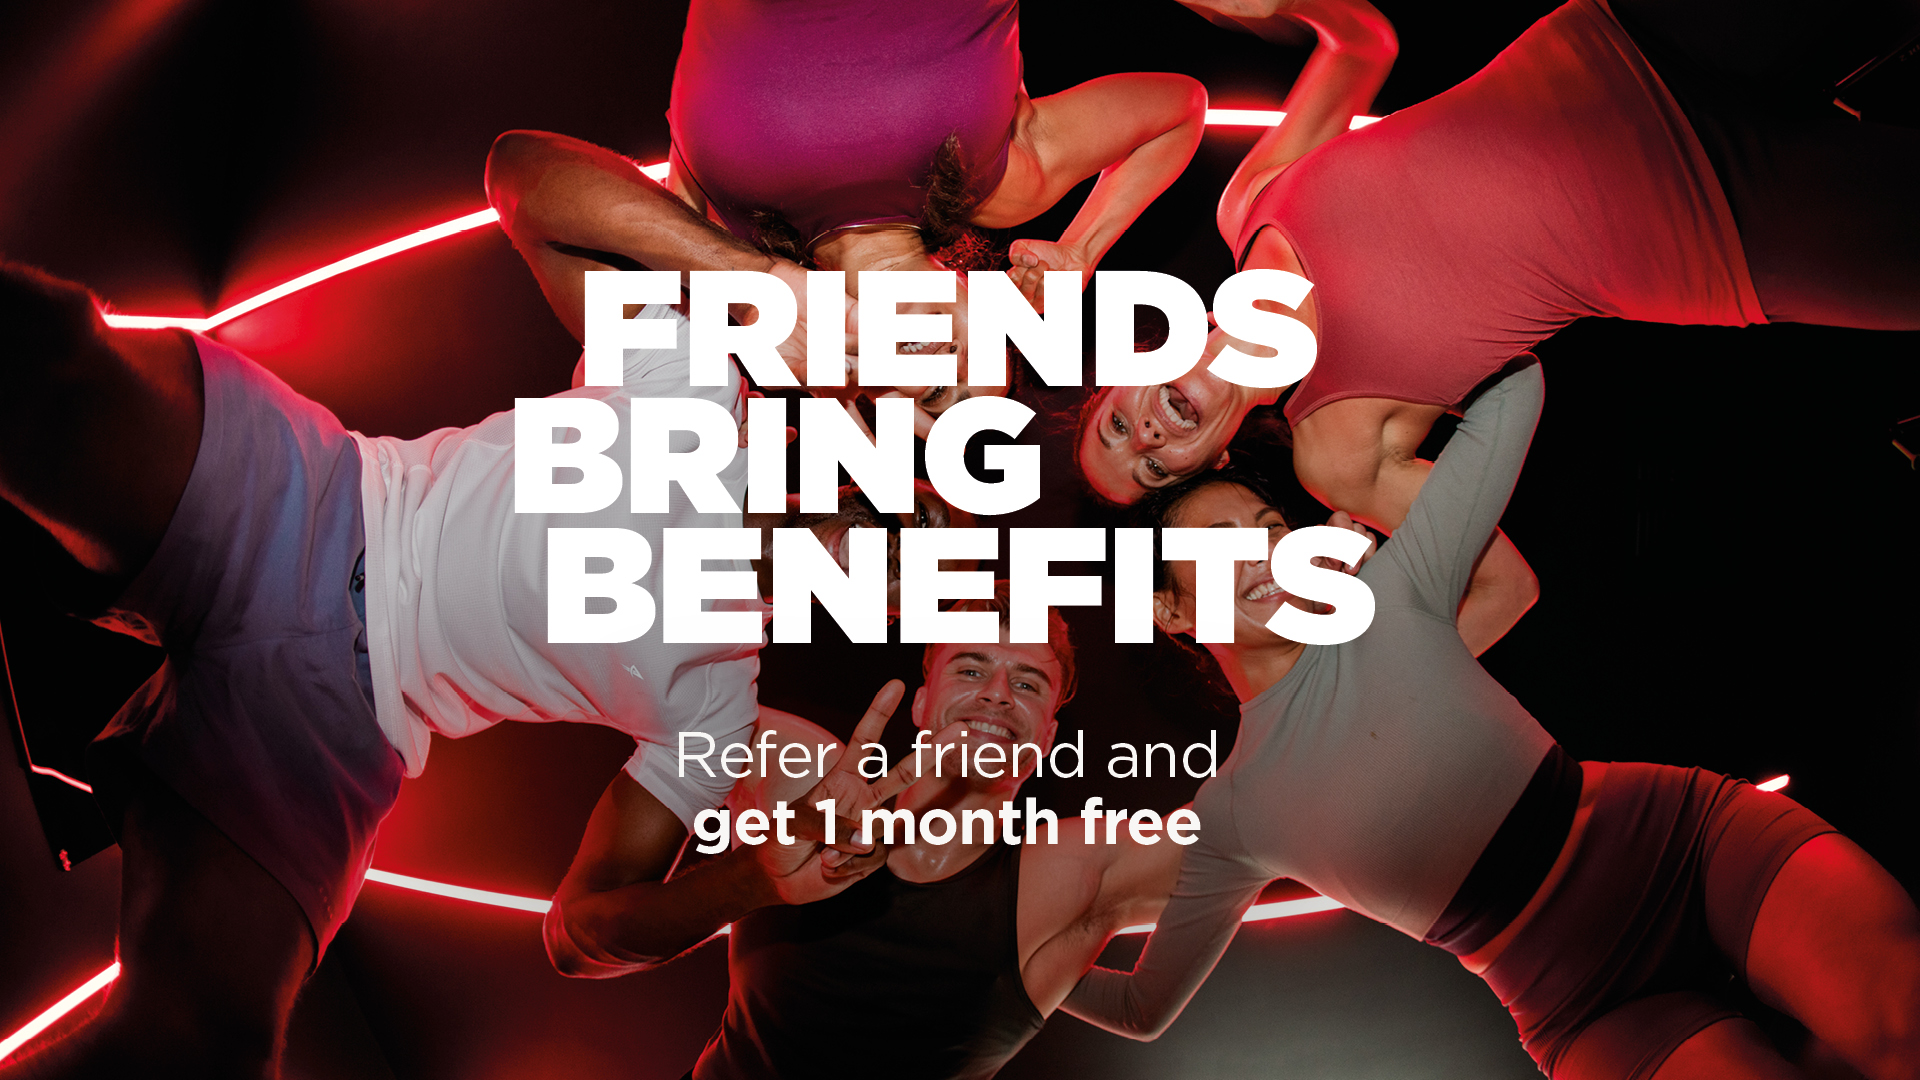 Friends bring benefits